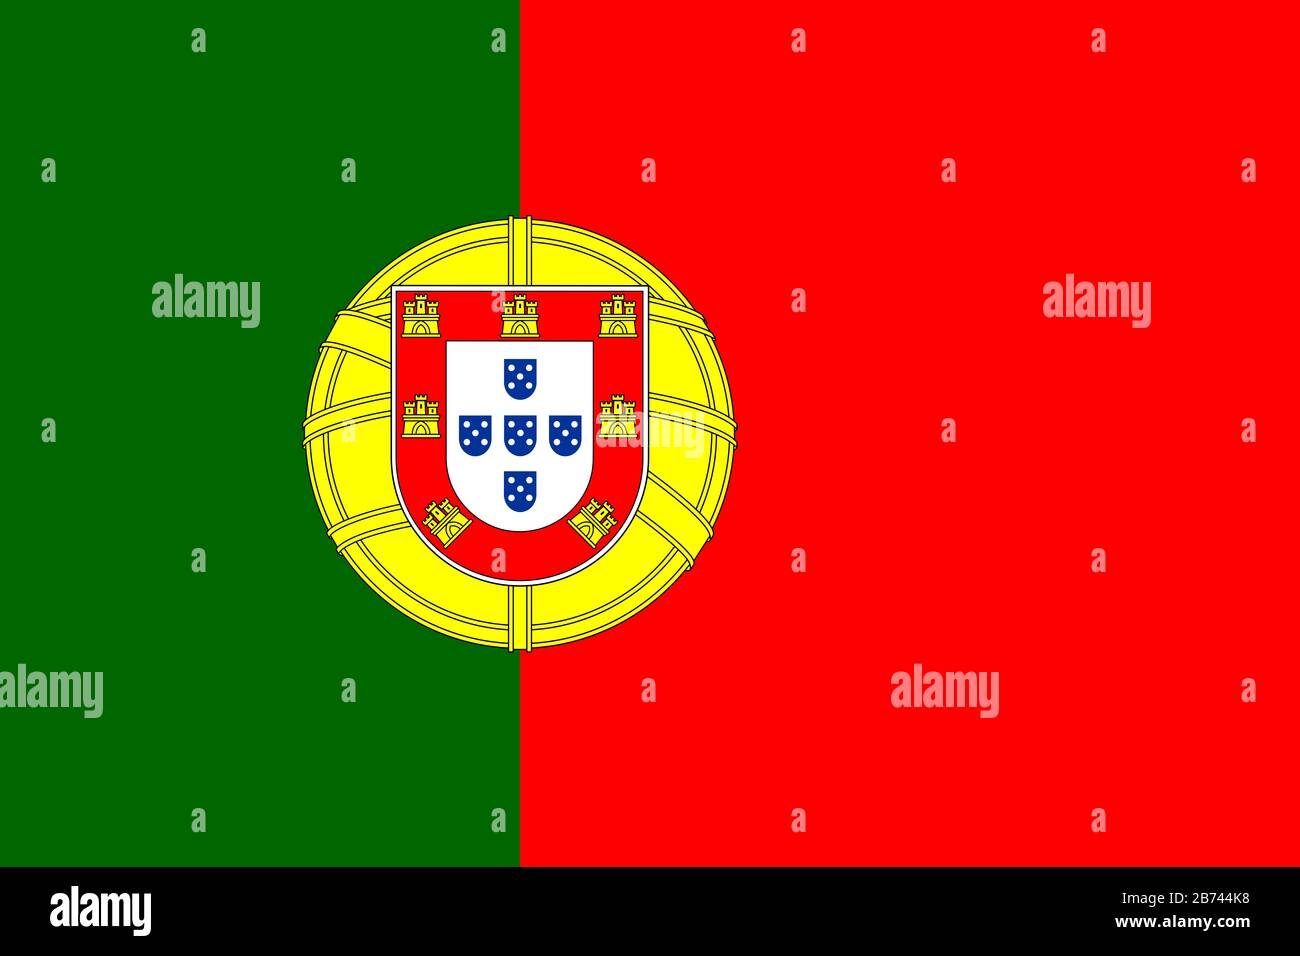 Bandera de Portugal - bandera portuguesa relación estándar - modo de color RGB verdadero Foto de stock